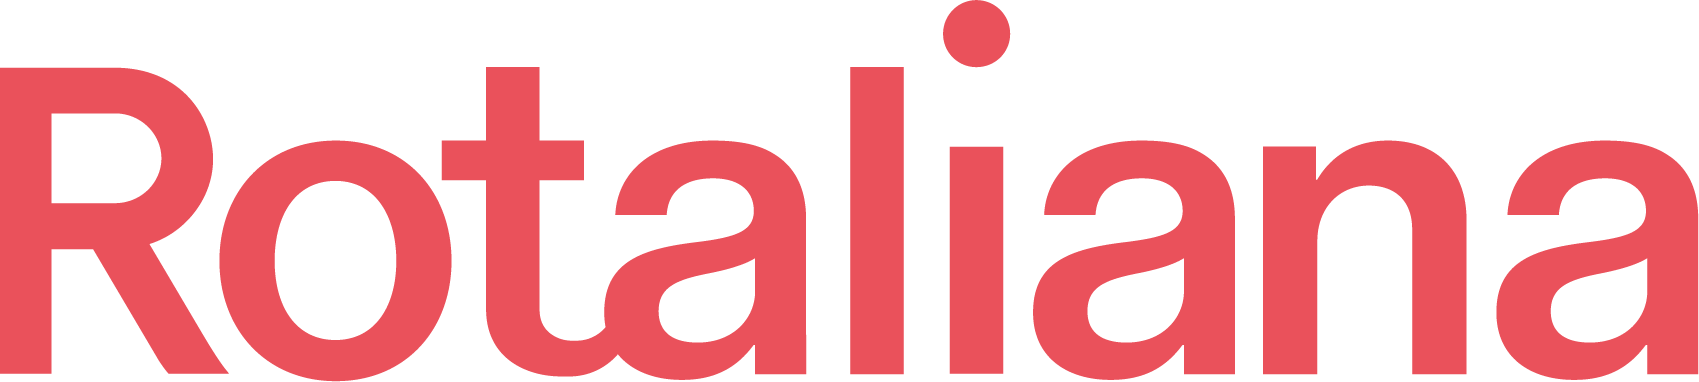 Rotaliana Logo